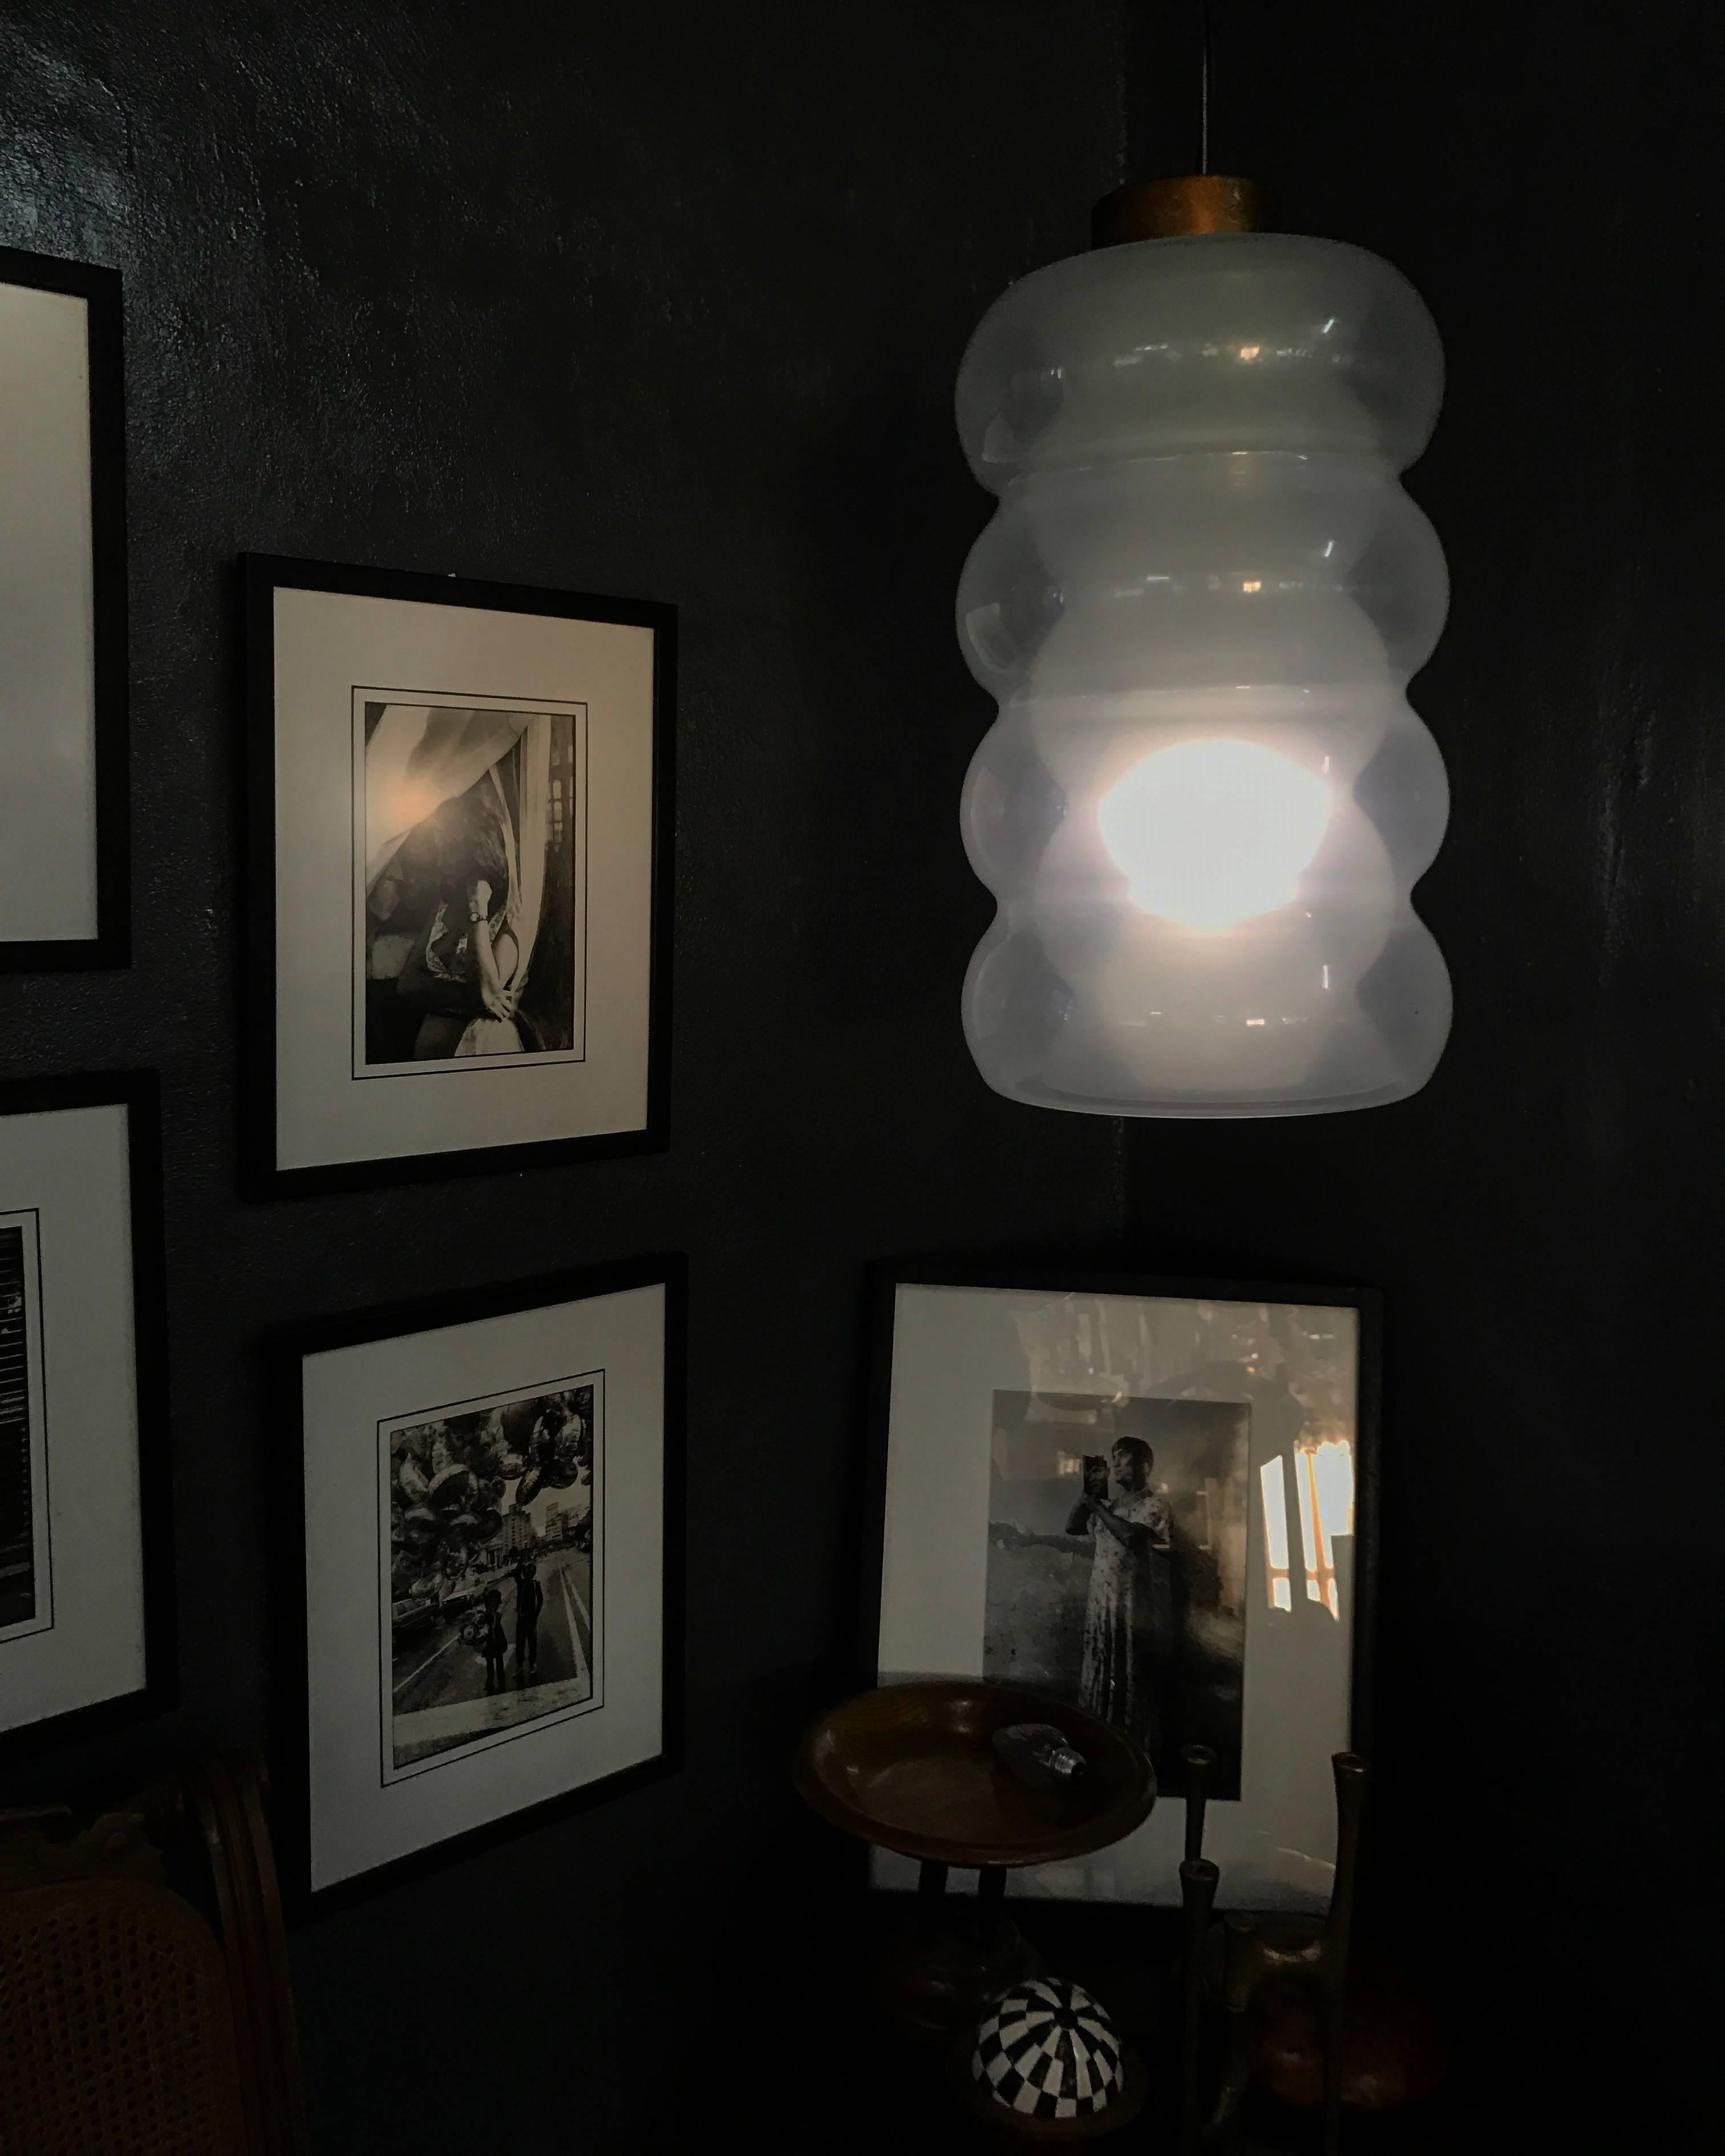 Schöne und seltene Mid-Century Modern Pendelleuchte von Mazzega, entworfen von Carlo Nason, um 1960, Murano, Italien.
Die Lampe allein misst 18 Zoll hoch und hat einen Durchmesser von 12 Zoll
Besteht aus drei separaten Teilen, die zusammen